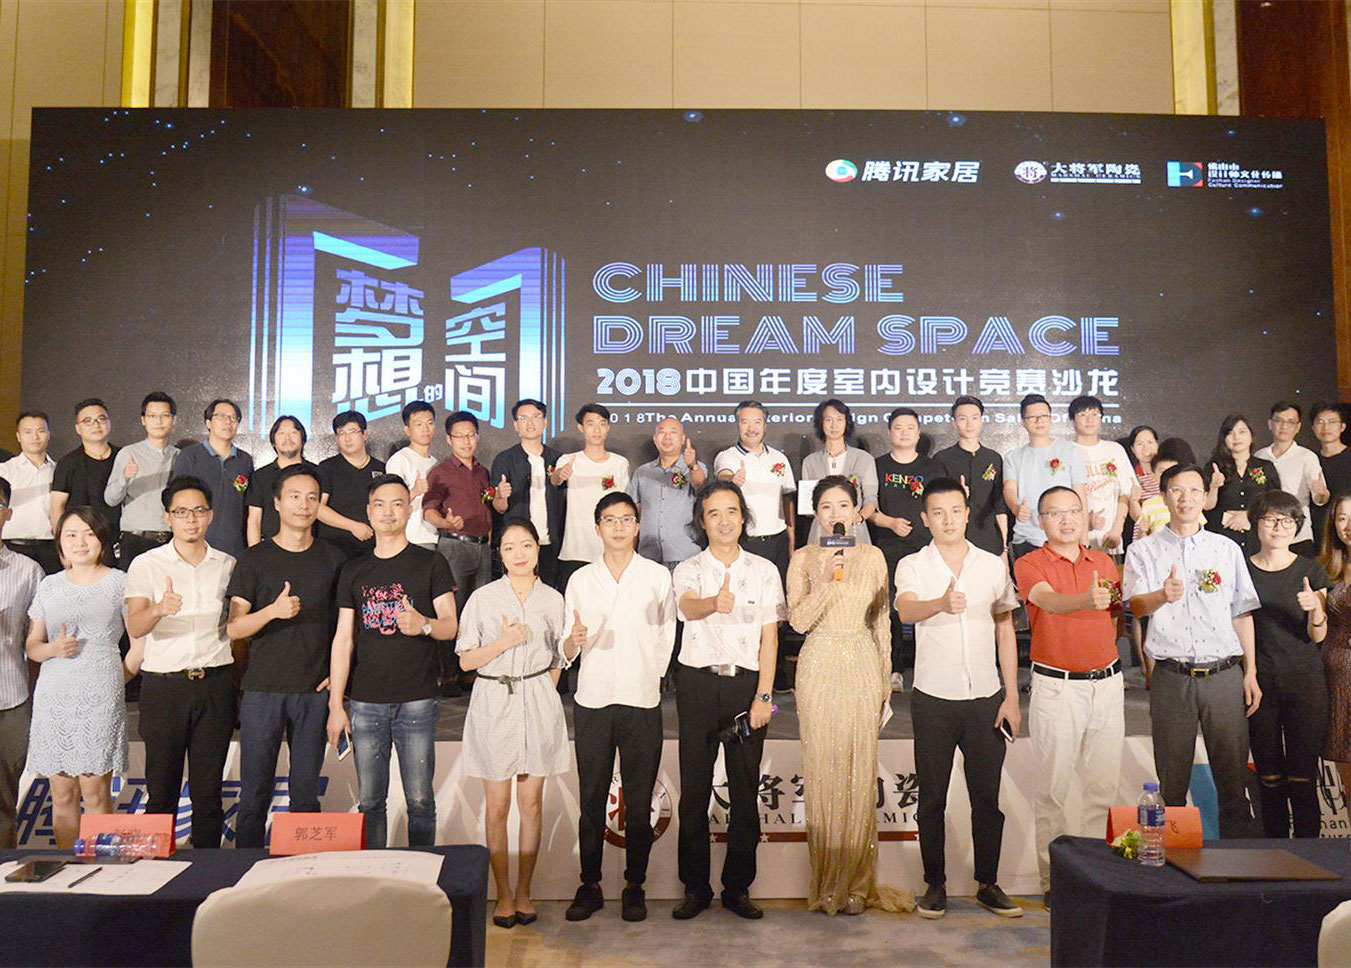 突破20w+关注！ 《梦想的空间》2018中国年度室内设计竞赛沙龙福州站再燃战火！
